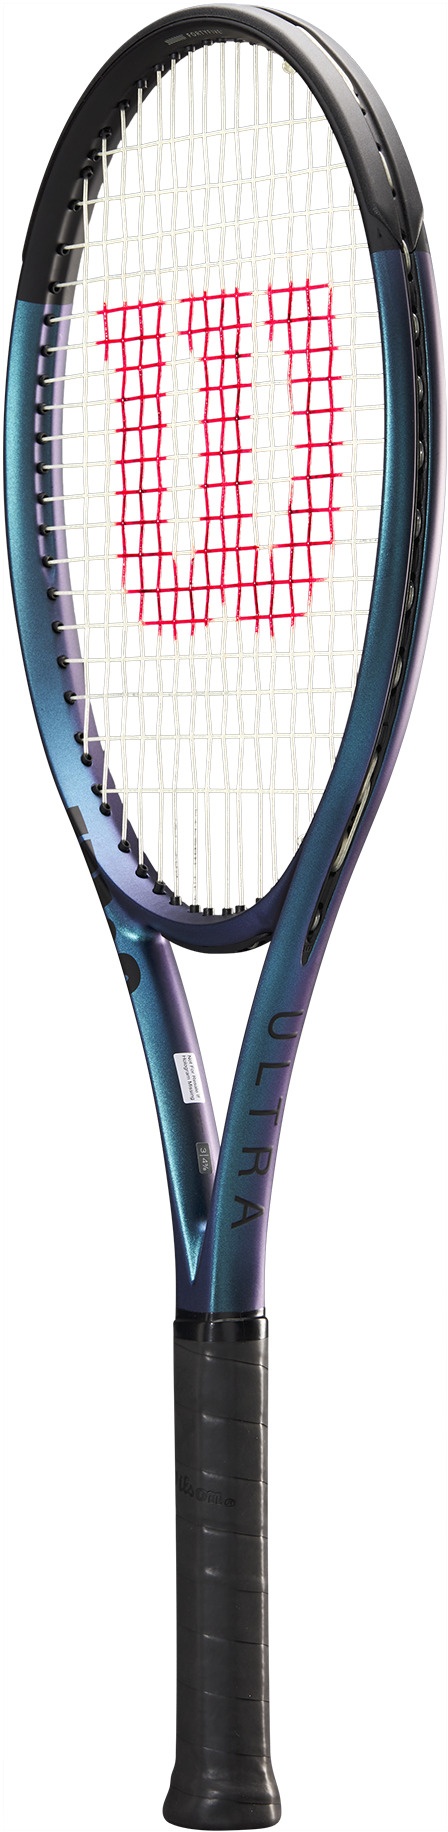 Výkonnostní tenisová raketa